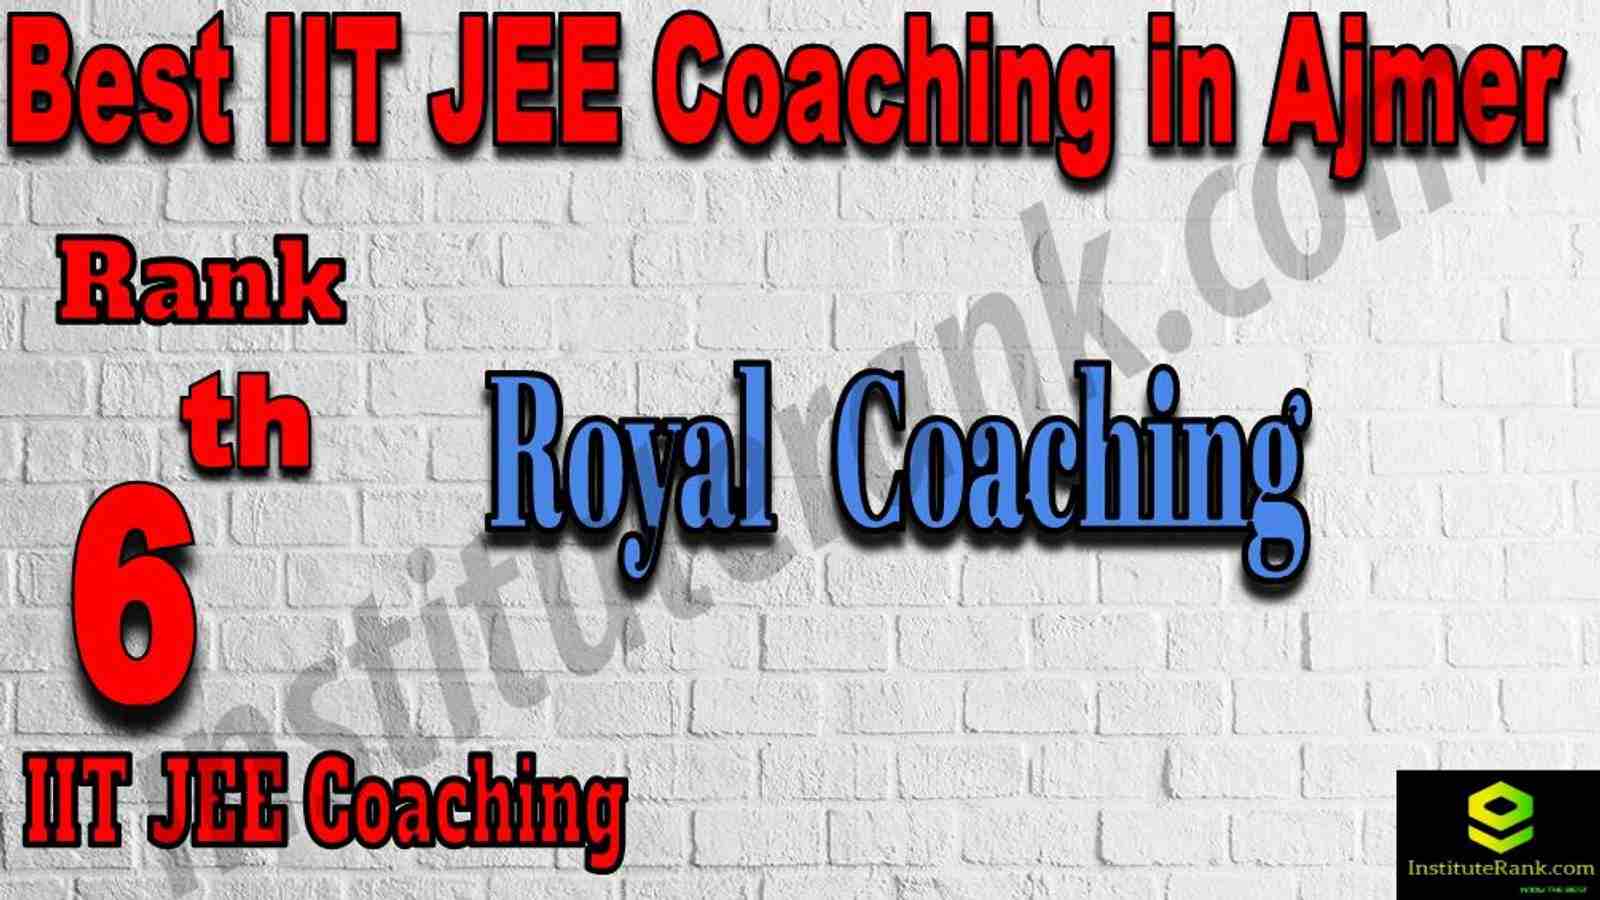 6th Best IIT JEE Coaching in Ajmer